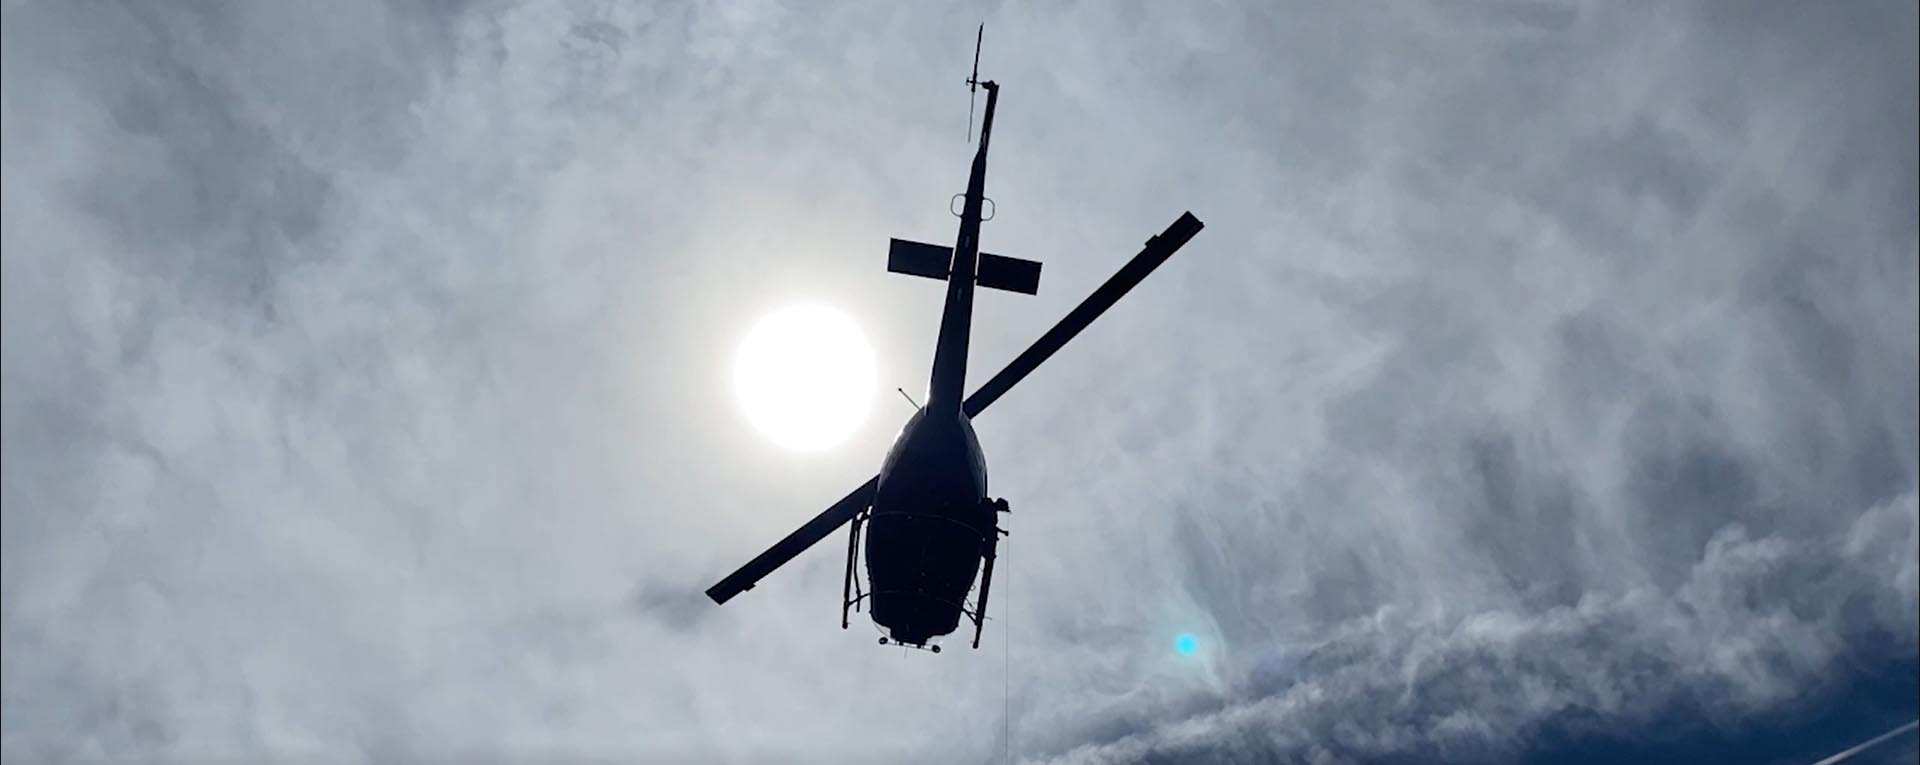 Helicóptero voando no céu